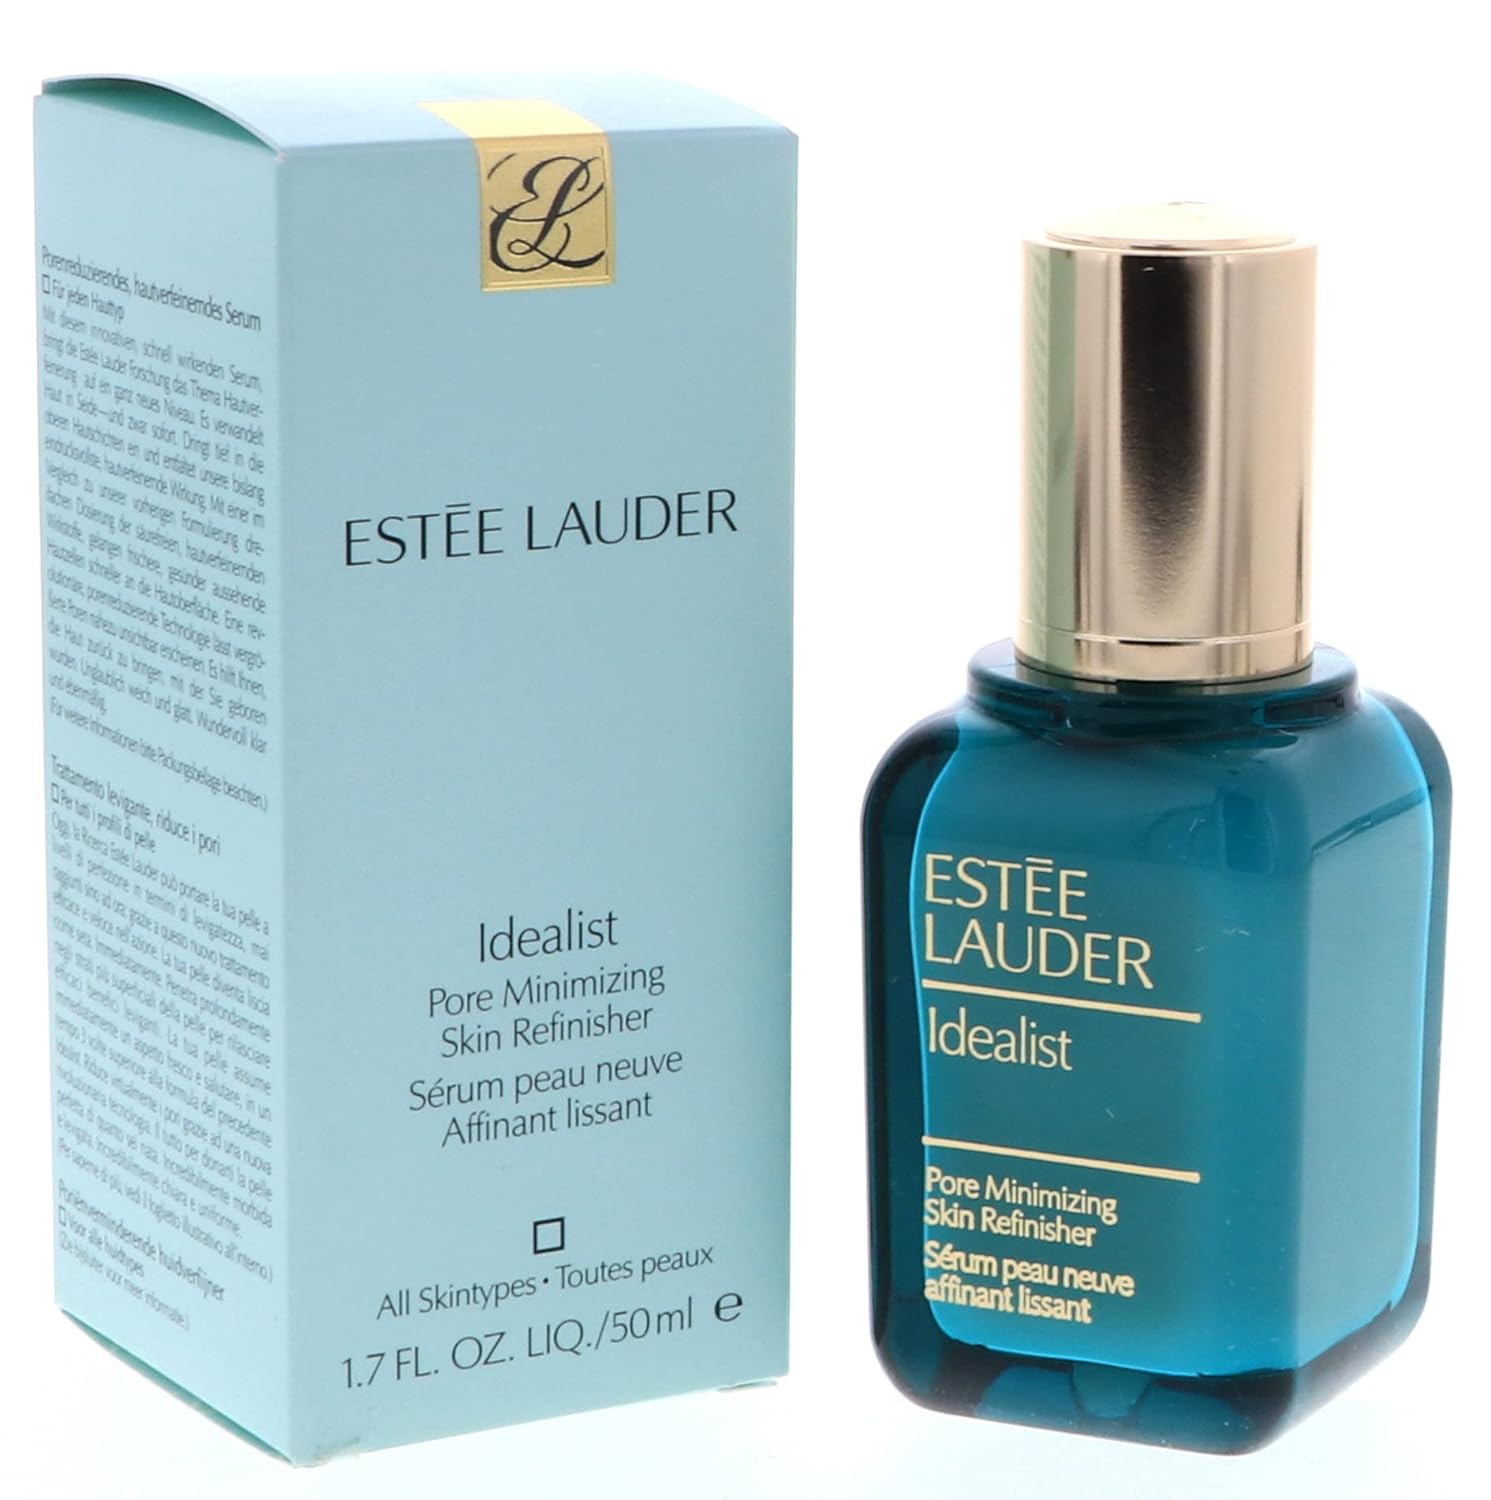 Esupli.com Estee Lauder Night Care 1.7 Oz Idealist Pore Minimizing Skin